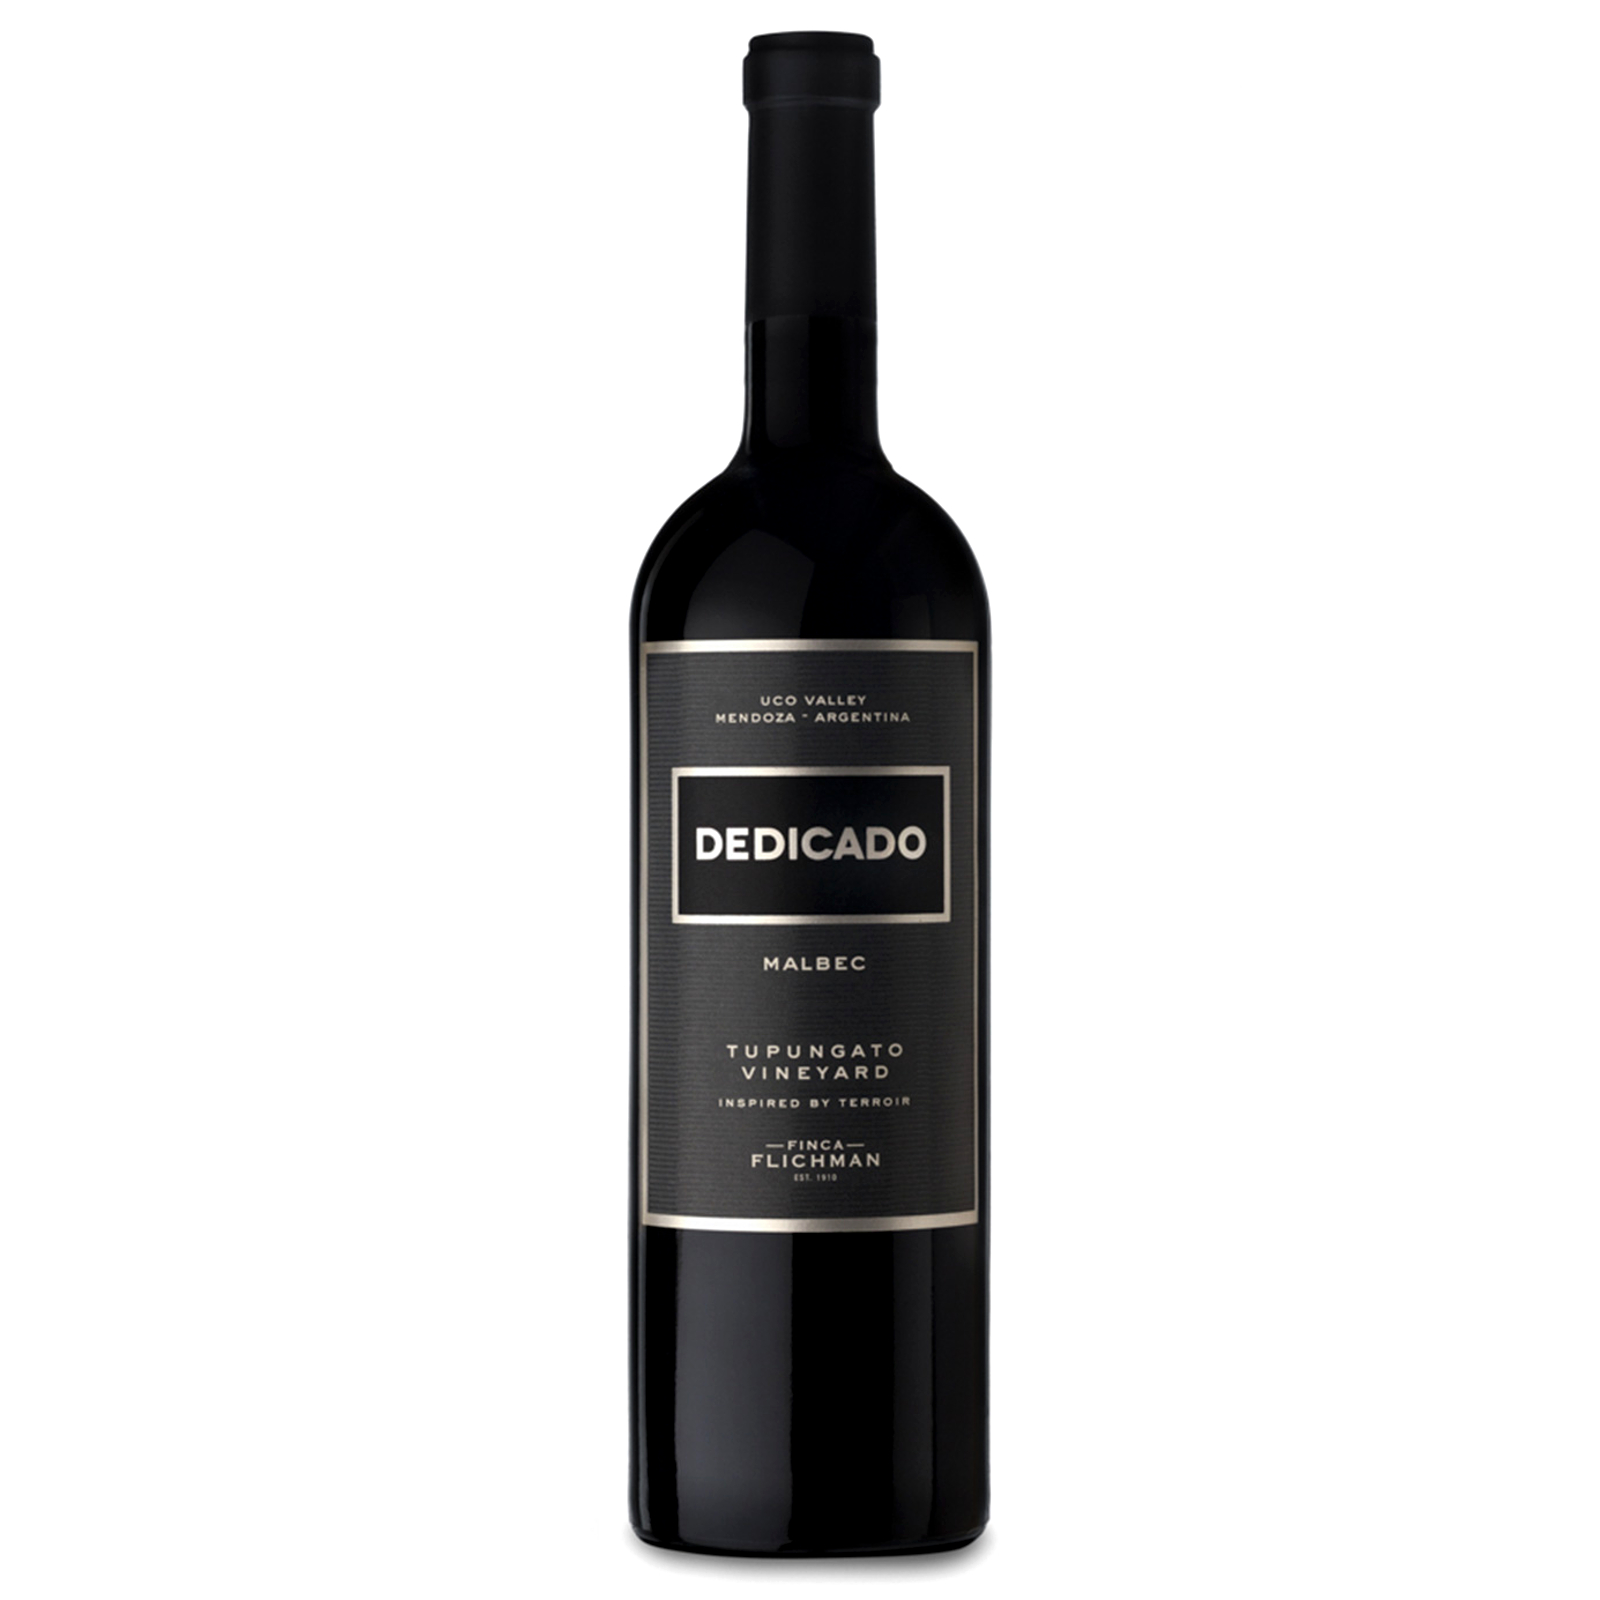 Finca Flichman Dedicado Tupungato Vineyards Malbec 2019 Red Wine – Argentina